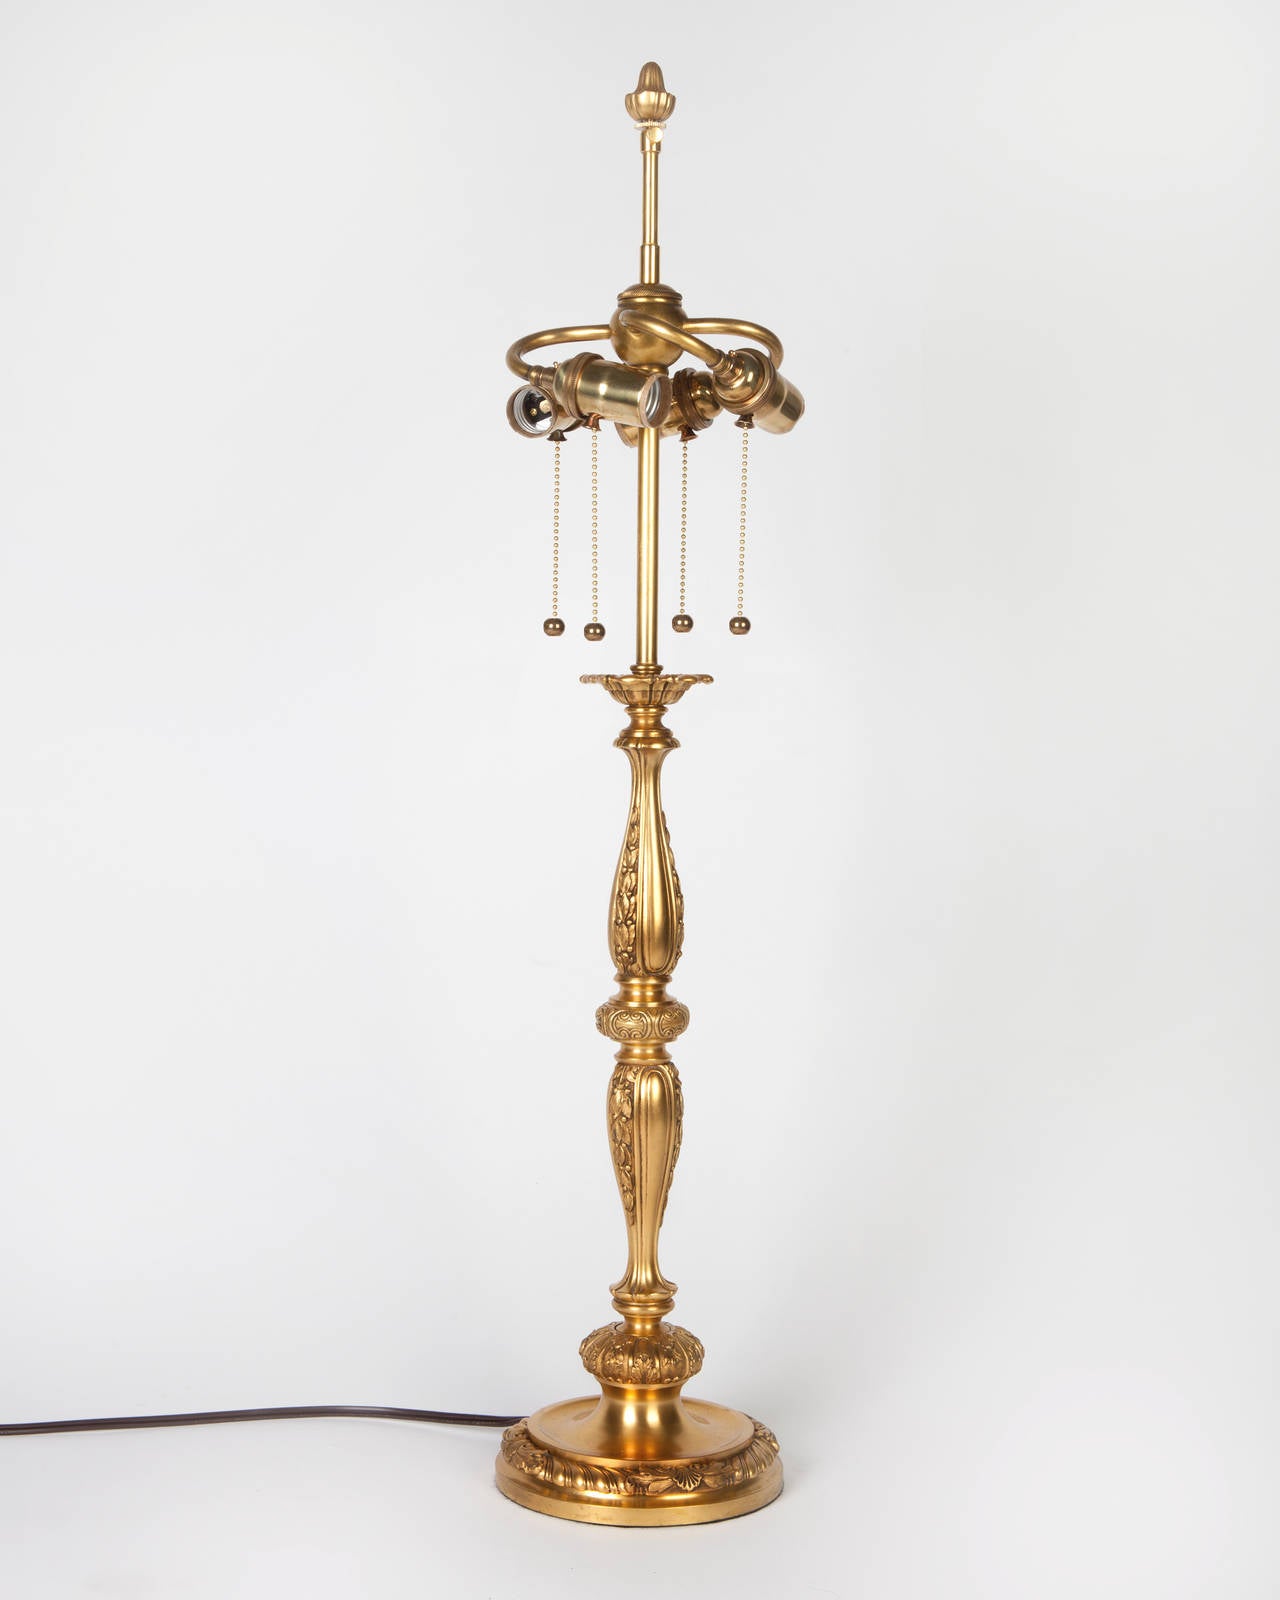 ATL1888
Une lampe de table de forme balustre élancée, décorée de campanules, de torsades de cordes et de coquillages, dans sa finition dorée d'origine. Signé par le fabricant new-yorkais Sterling Bronze Co.

Dimensions :
Dimensions totales : 32-3/4